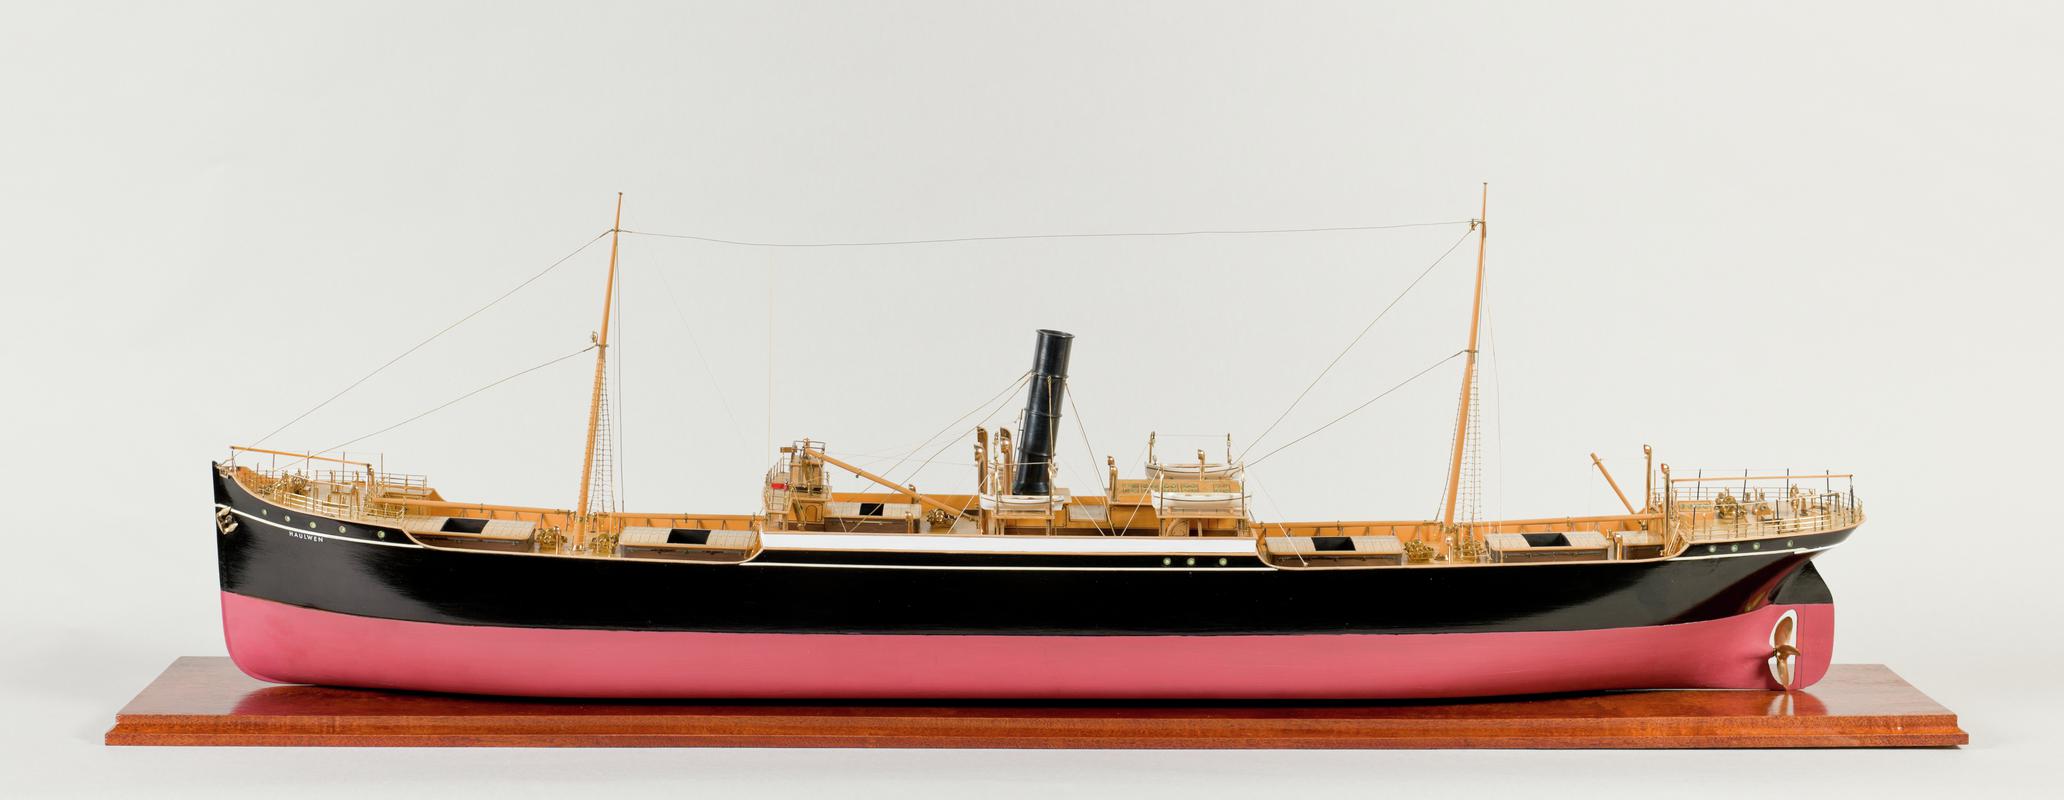 Full hull ship model of the S.S. HAULWEN